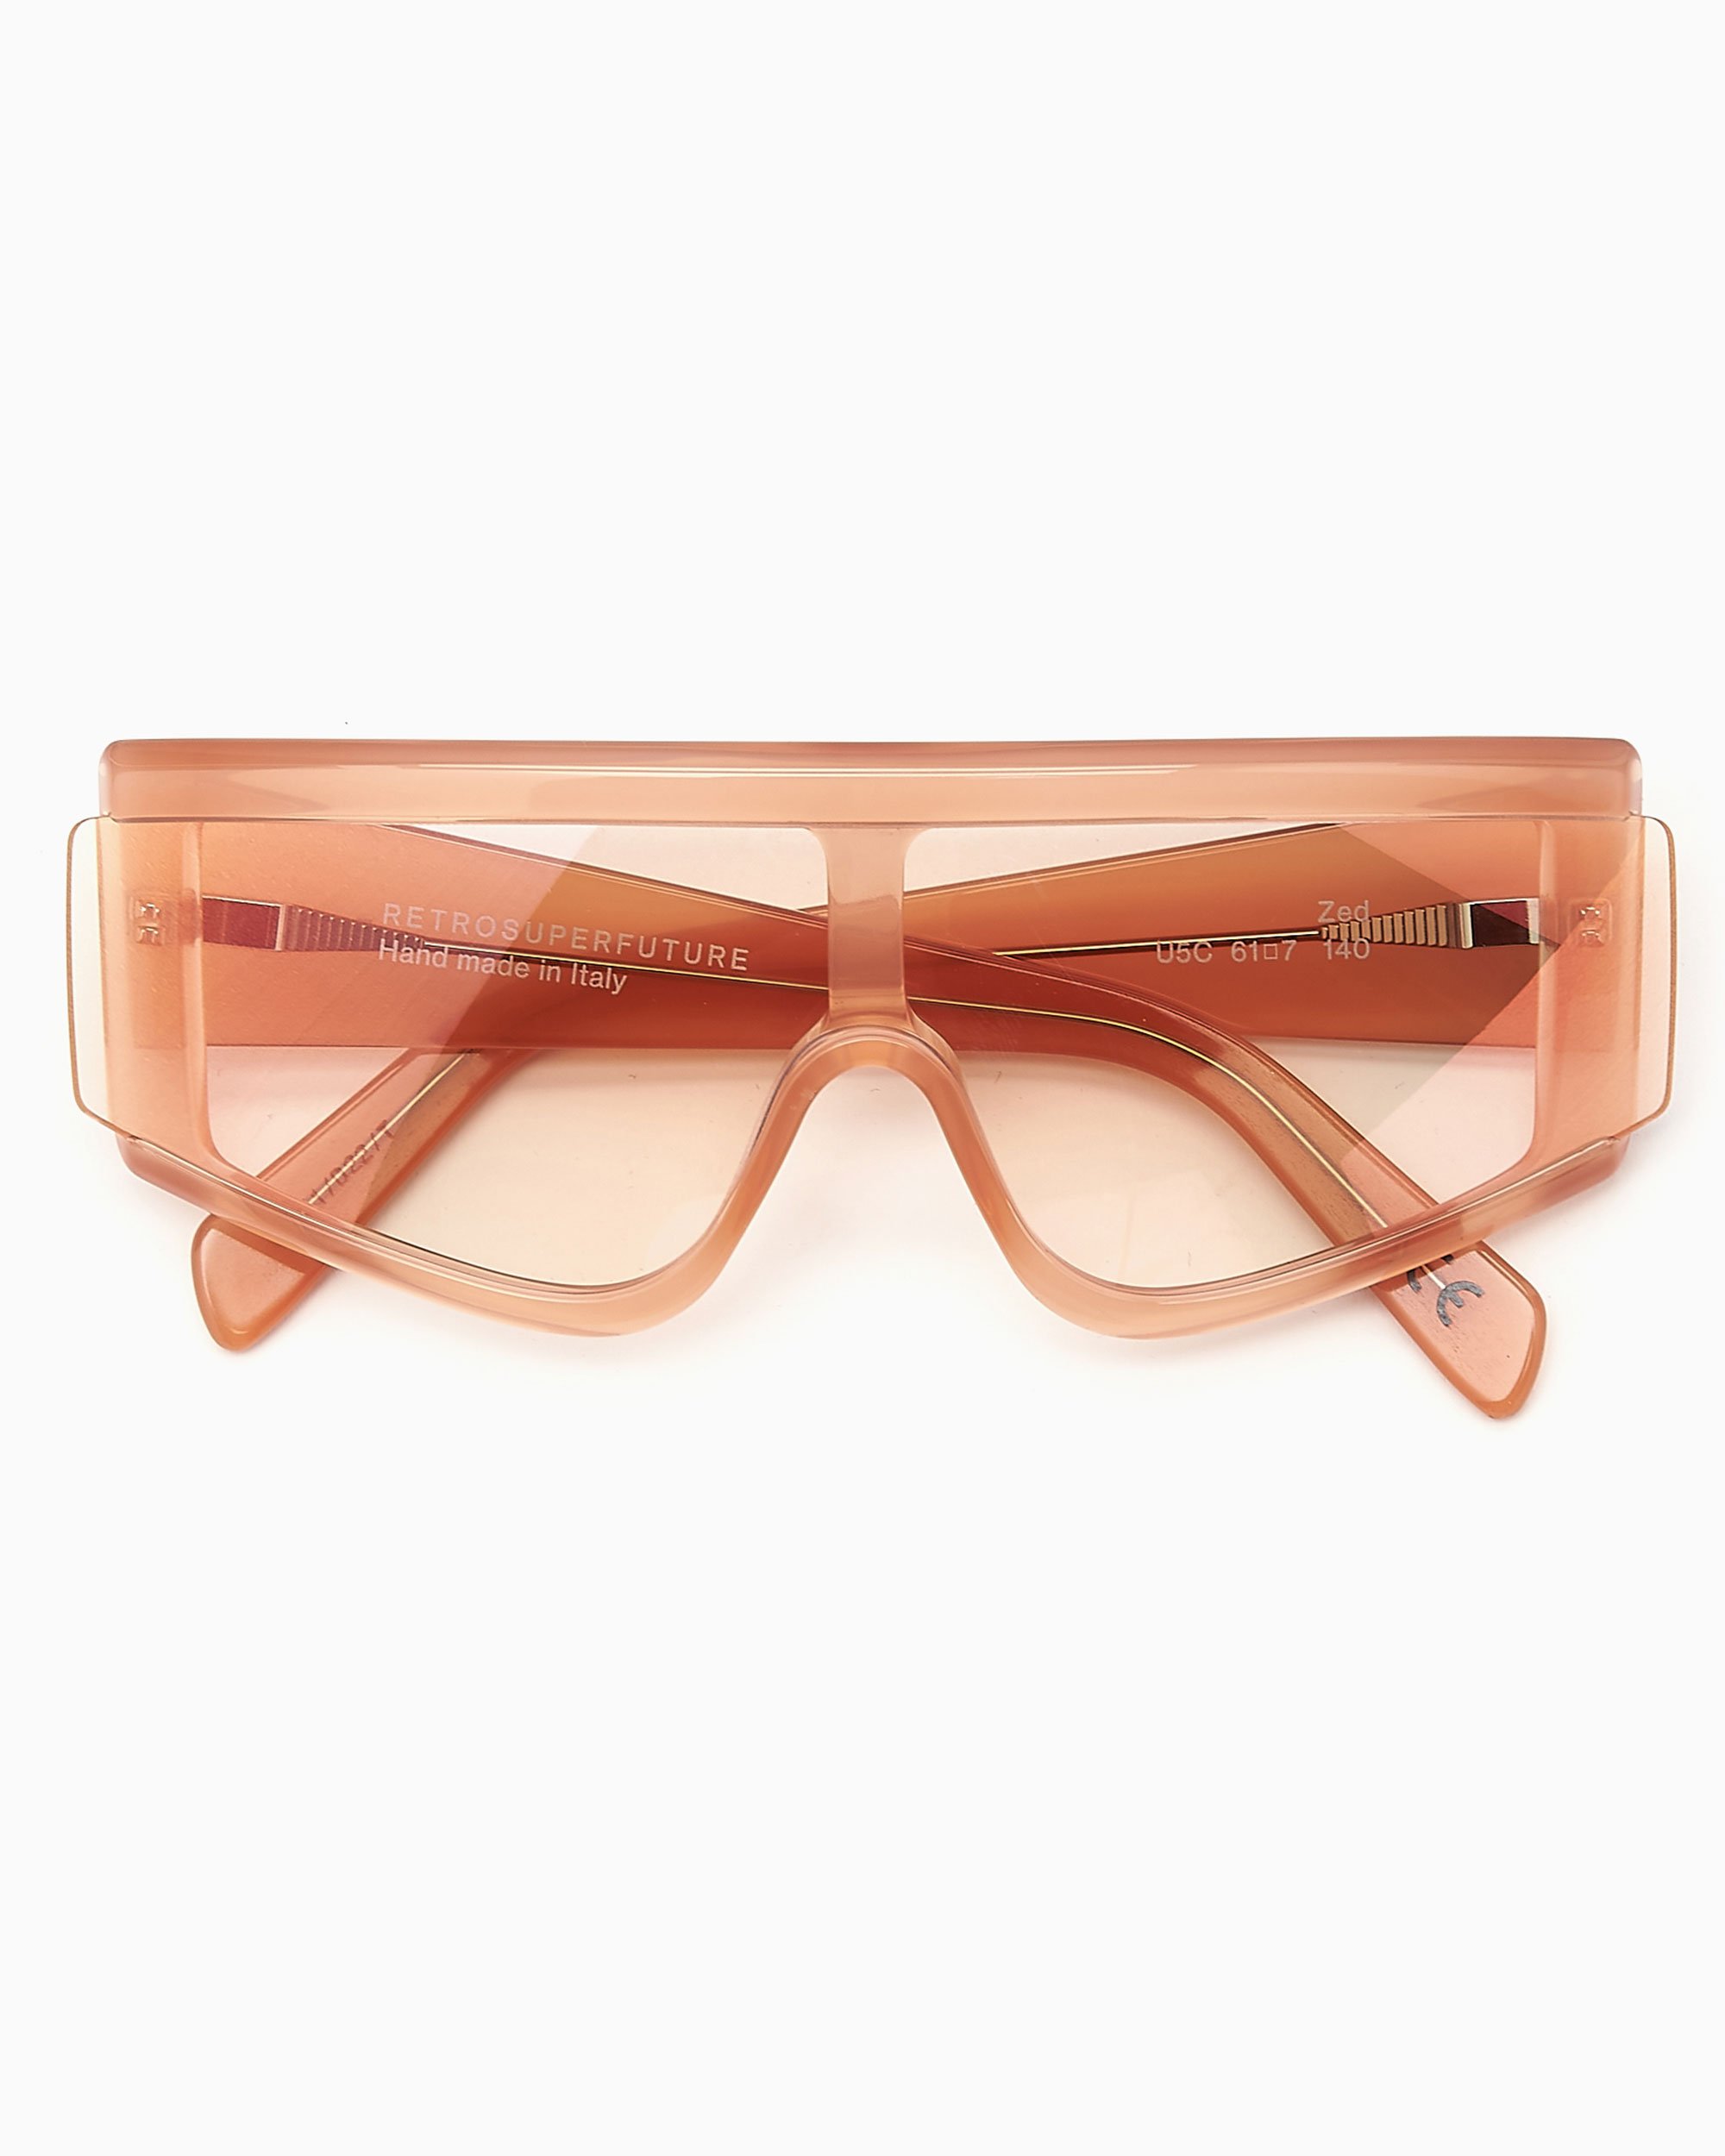 Retrosuperfuture Zed Burst Unisex Sunglasses Orange U5C| Buy 